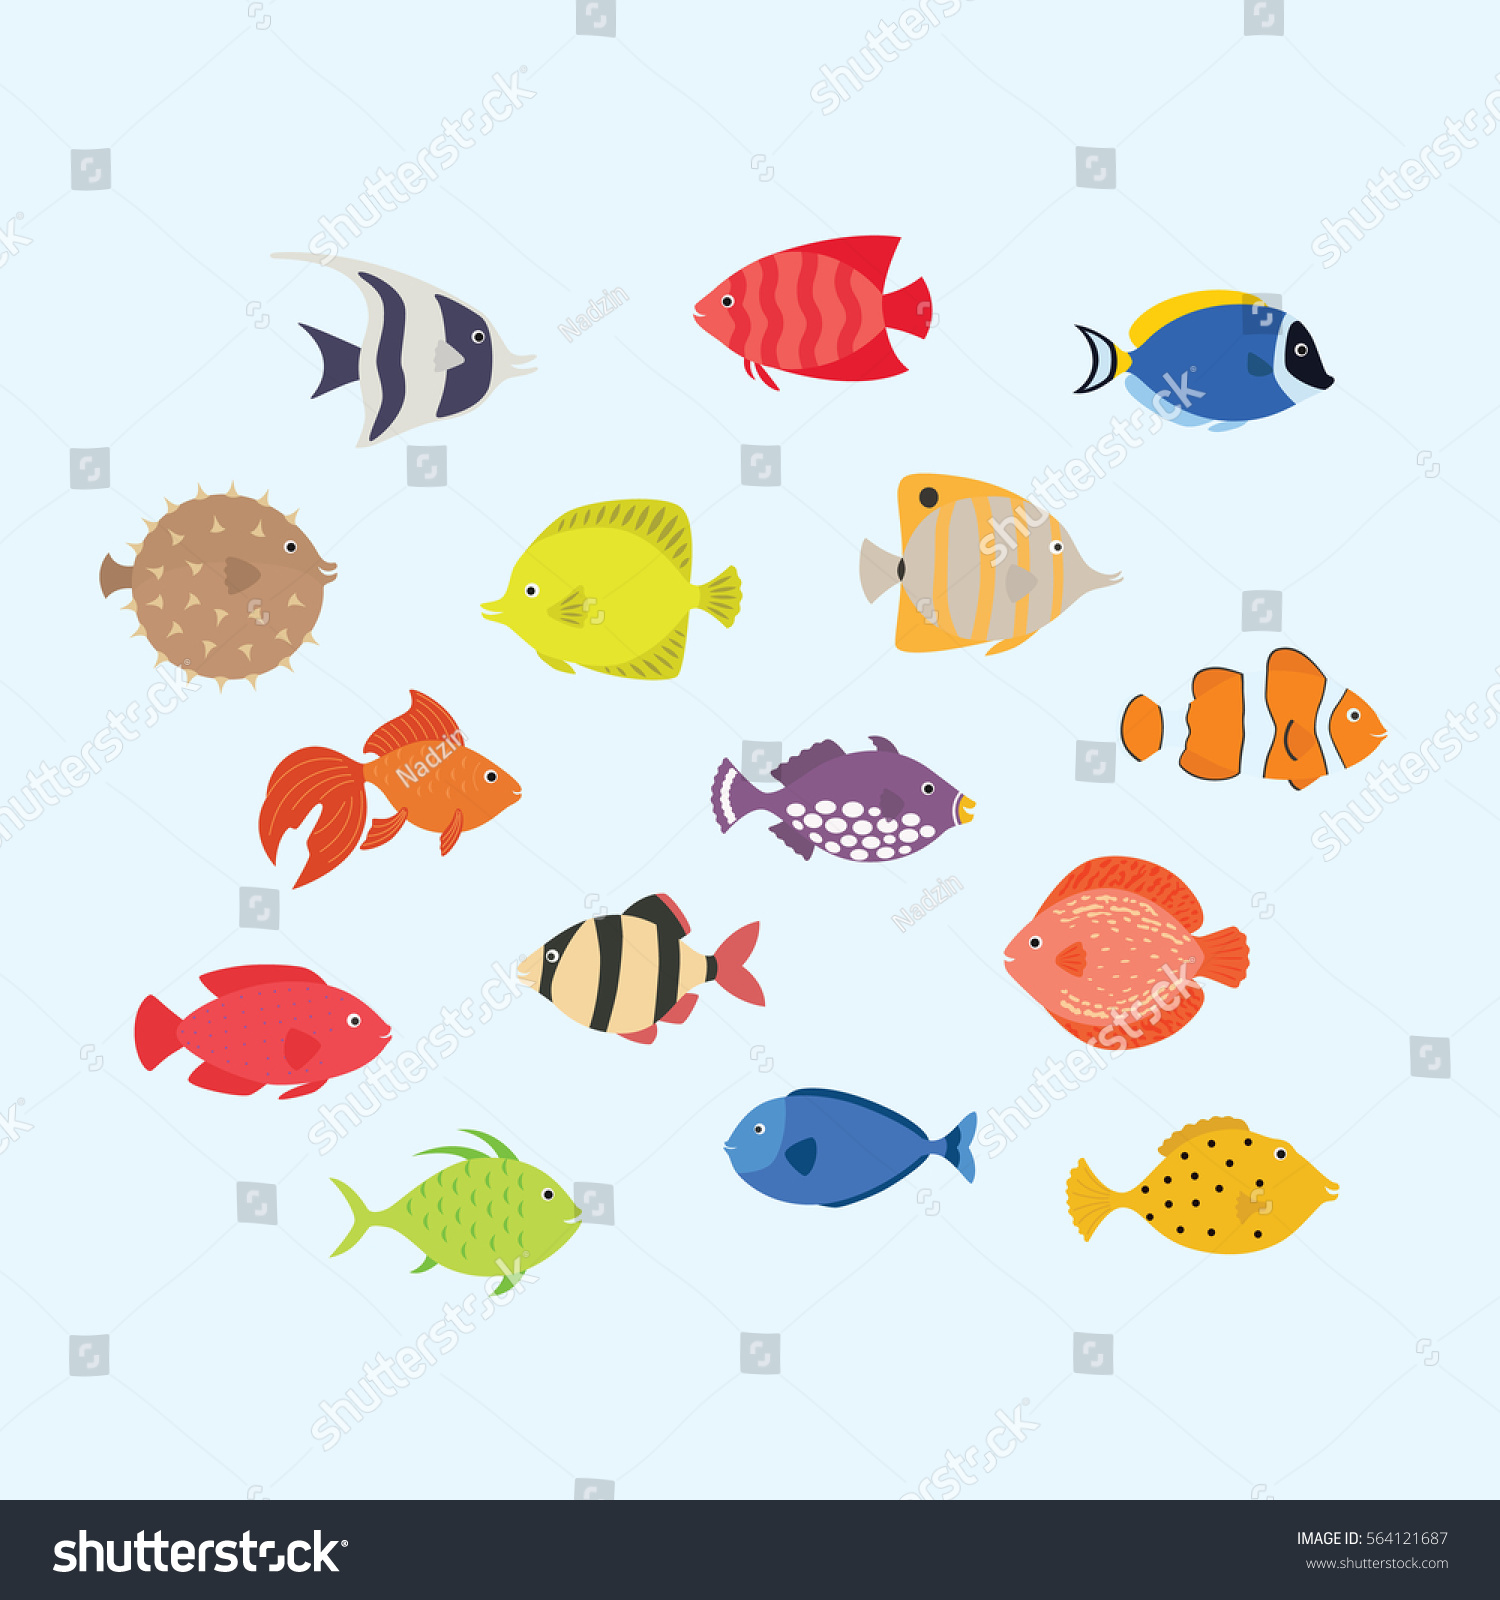 かわいい魚のベクターイラストアイコンセット 熱帯魚 海魚 水族館魚 のベクター画像素材 ロイヤリティフリー